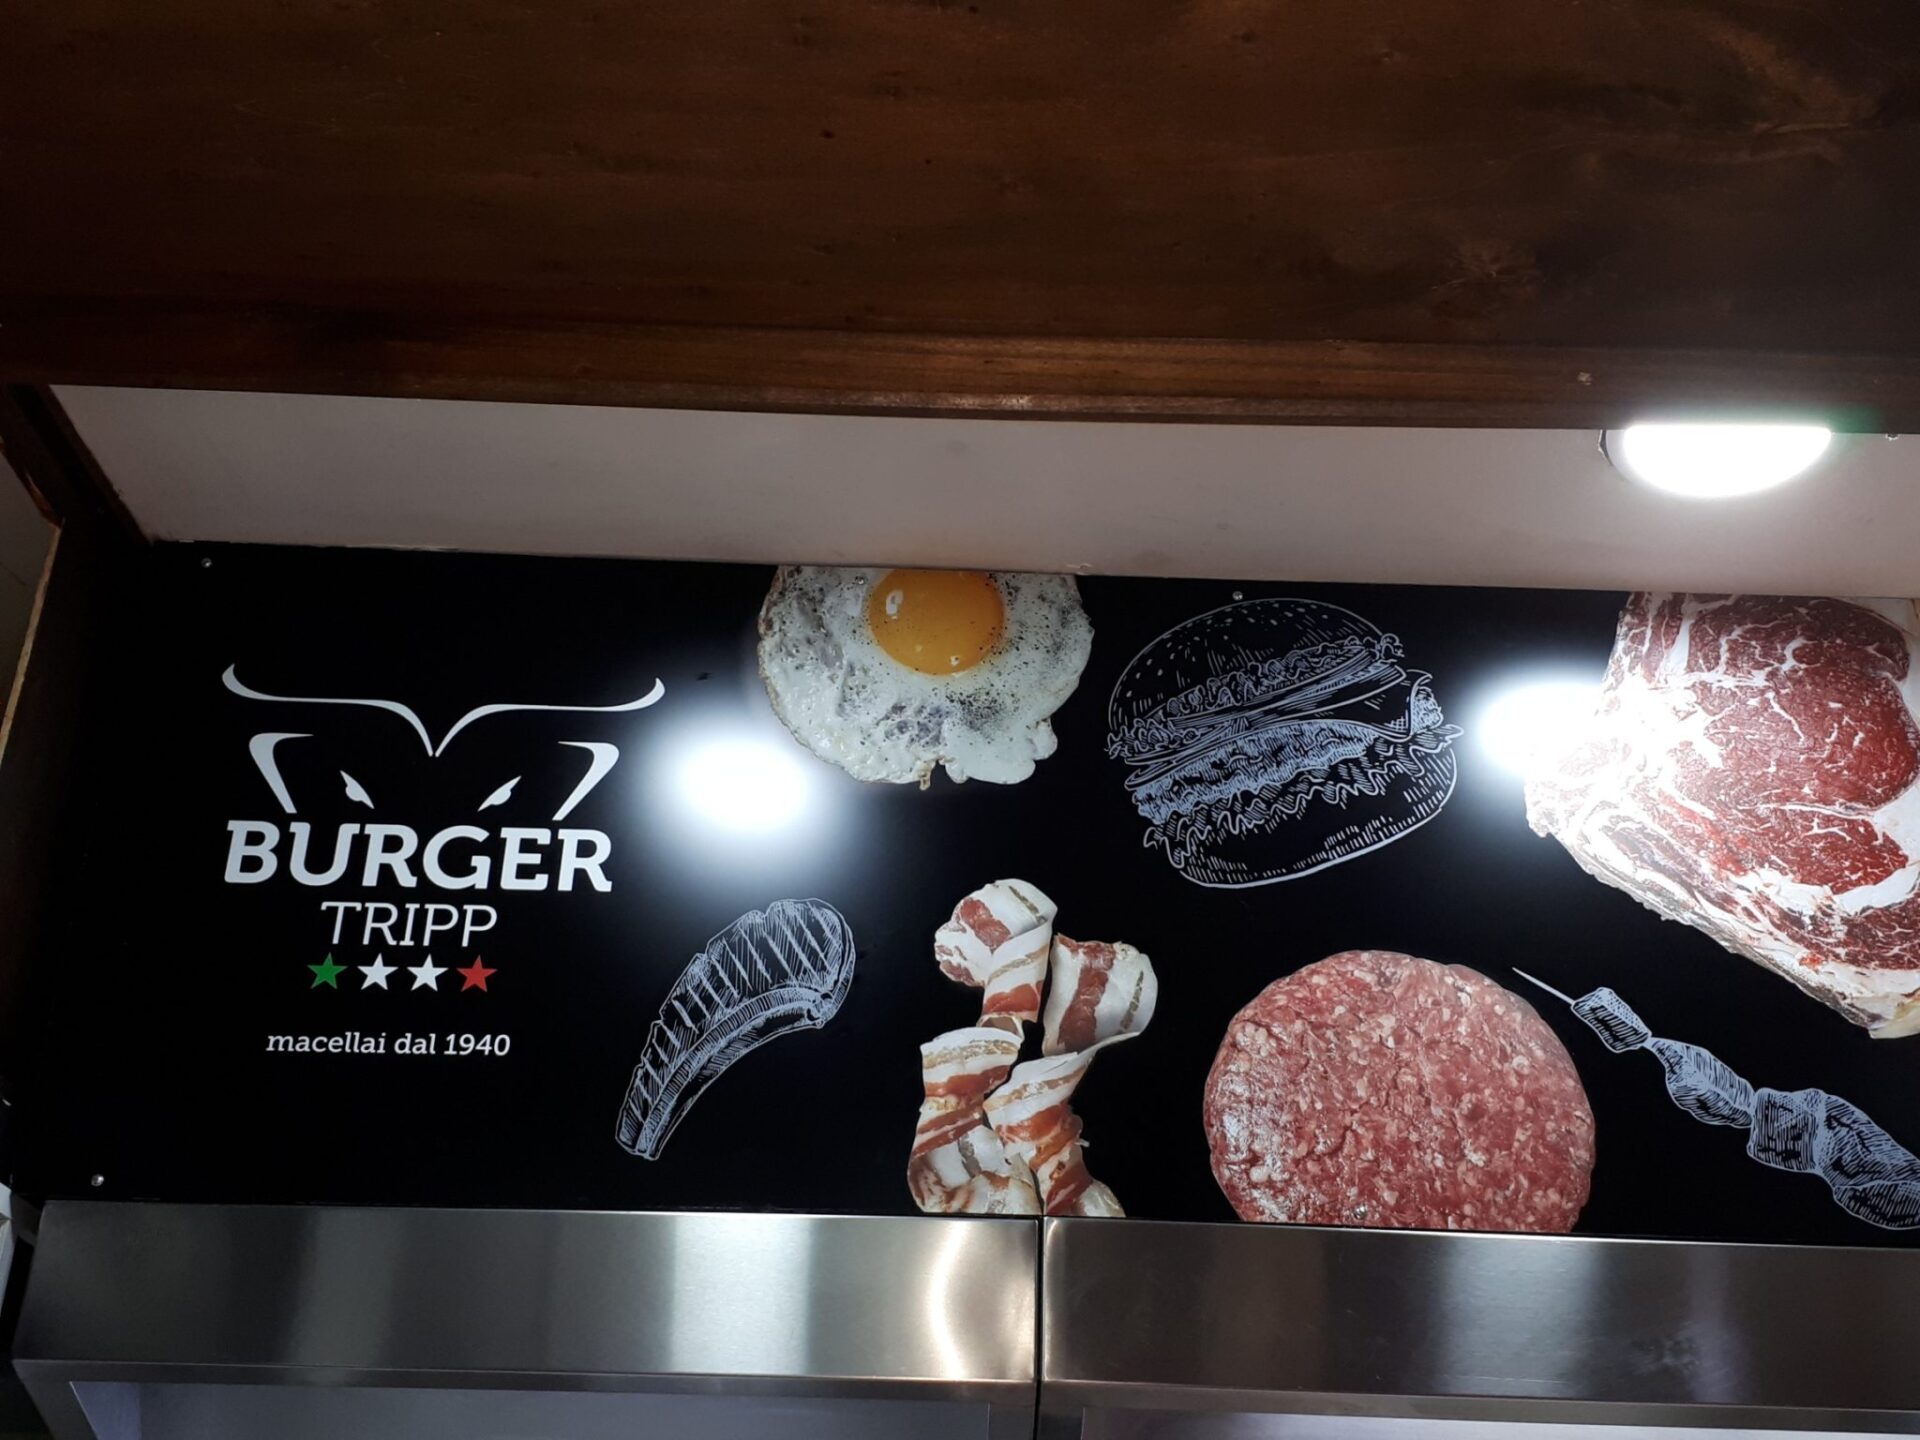 Burger Tripp, ovvero l’evoluzione della macelleria Trippicella - Sapori News 